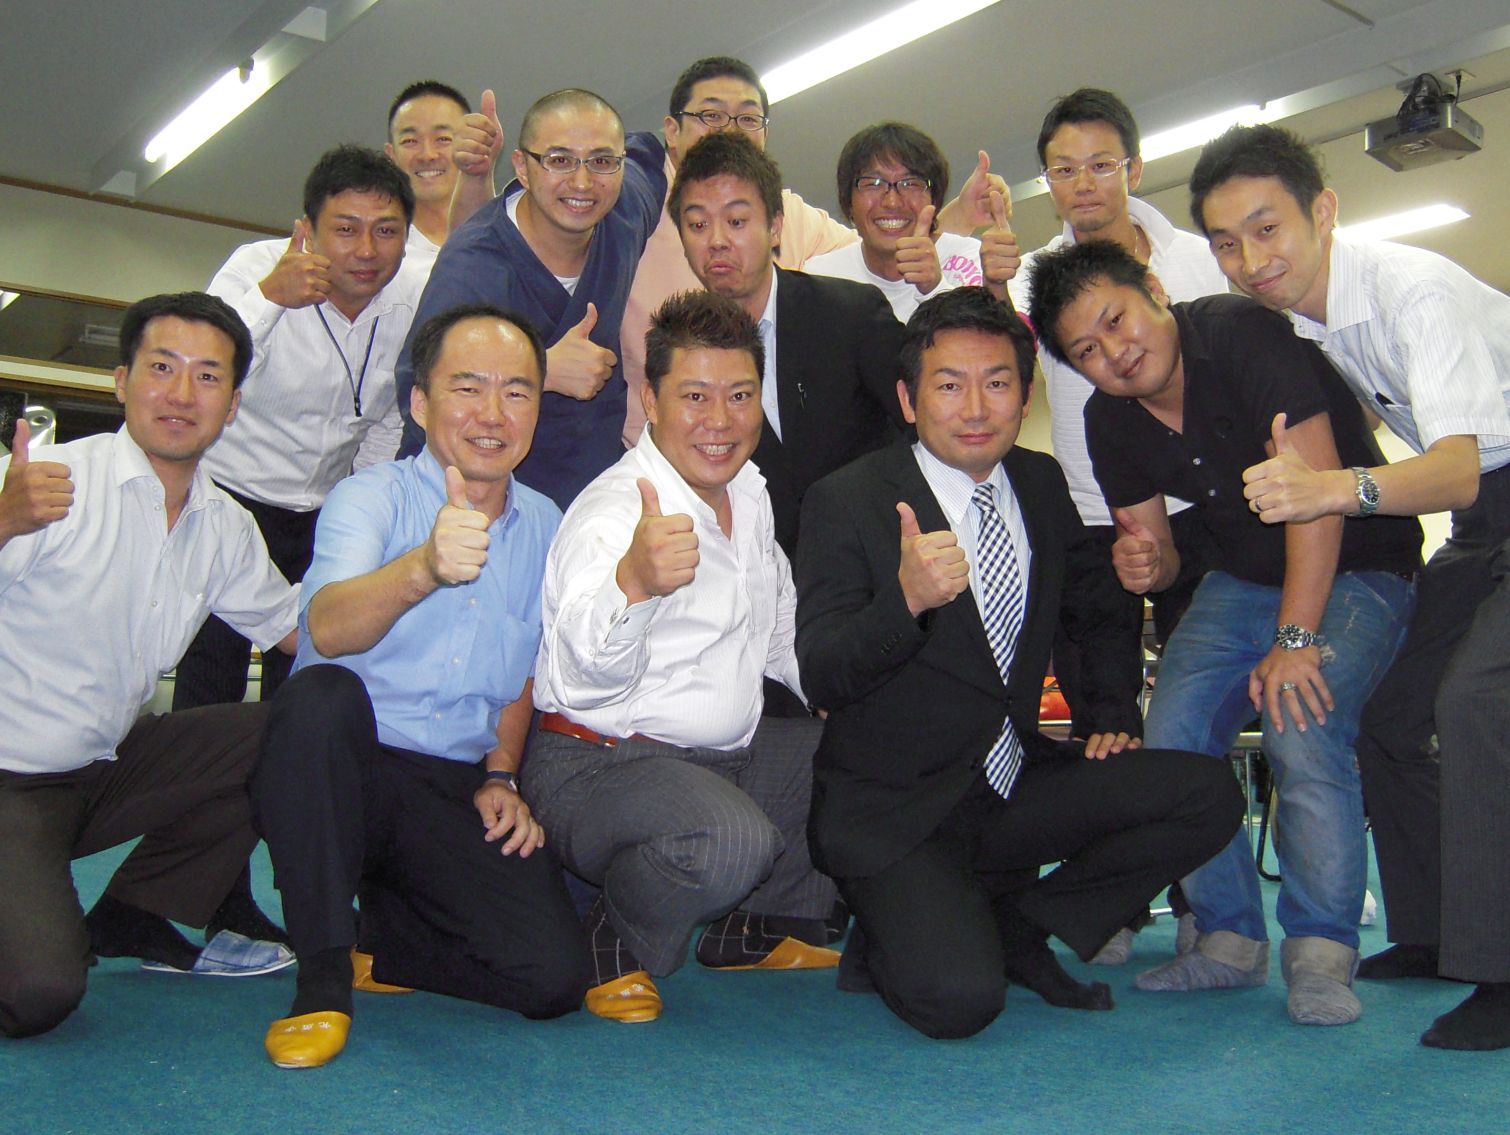 2011年8月22日 福岡青年会議所会員様向け第25回フェースブック初心者向け勉強会報告